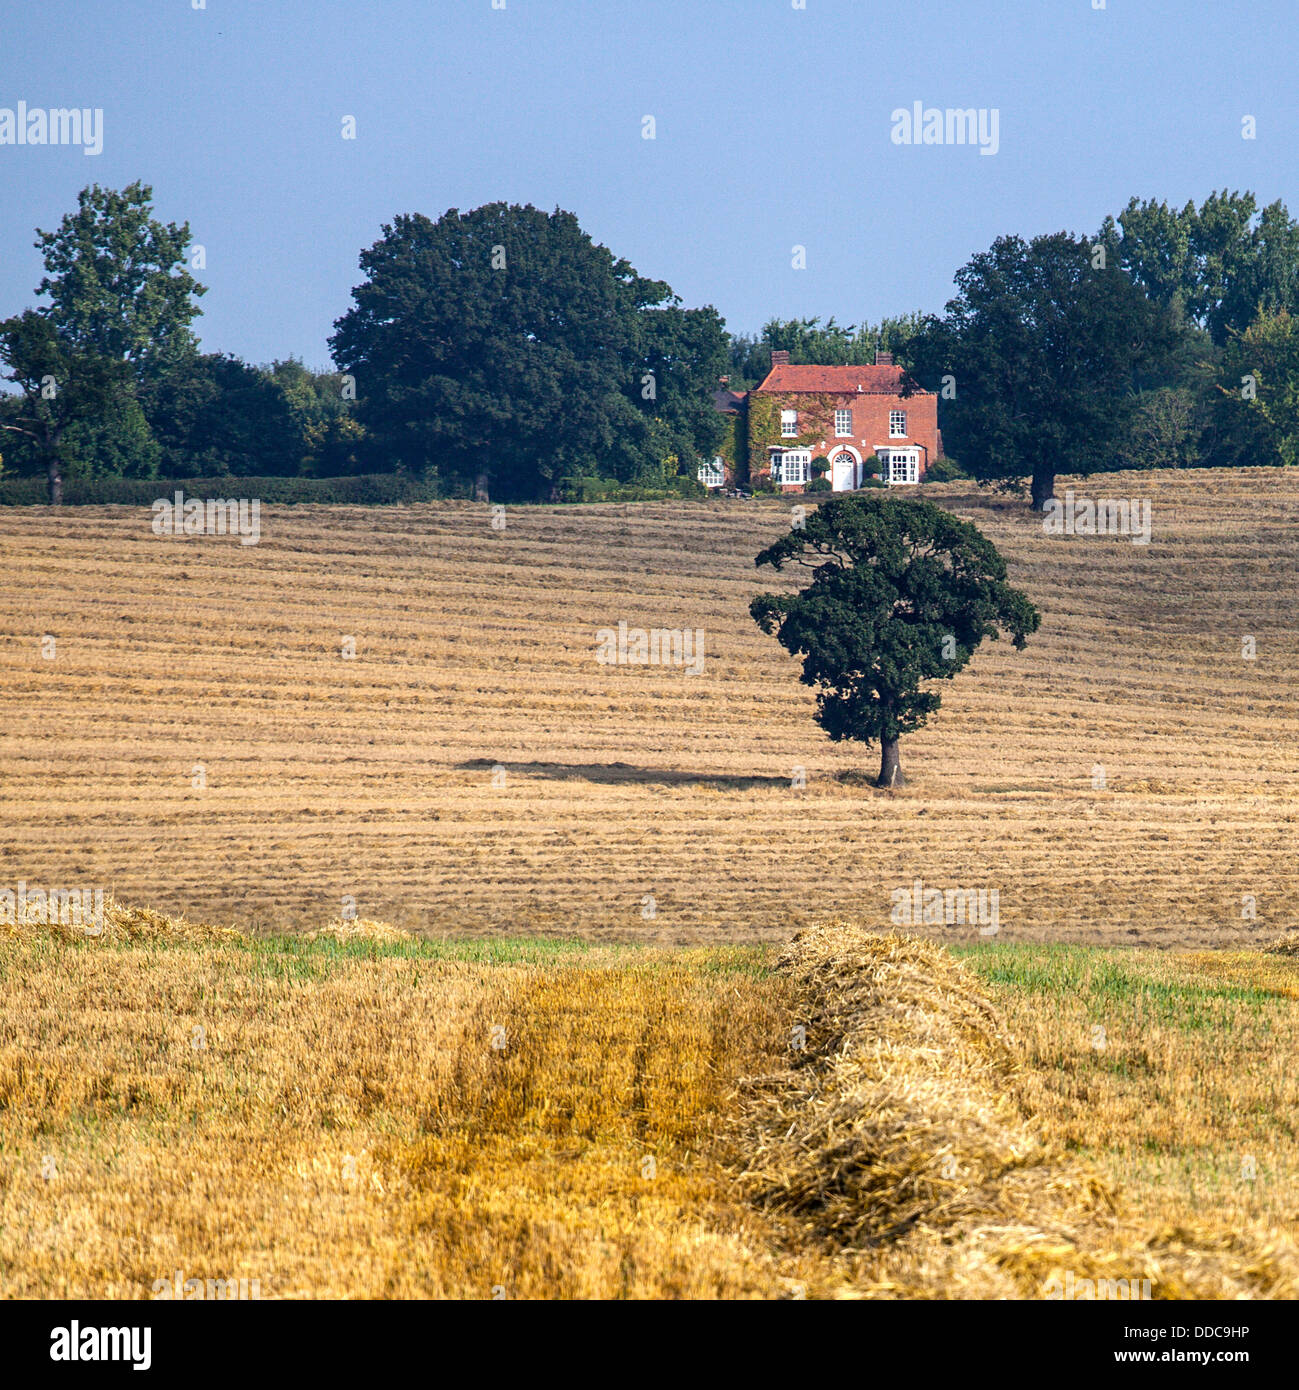 Baum im Feld mit Haus im Hintergrund Stockfoto